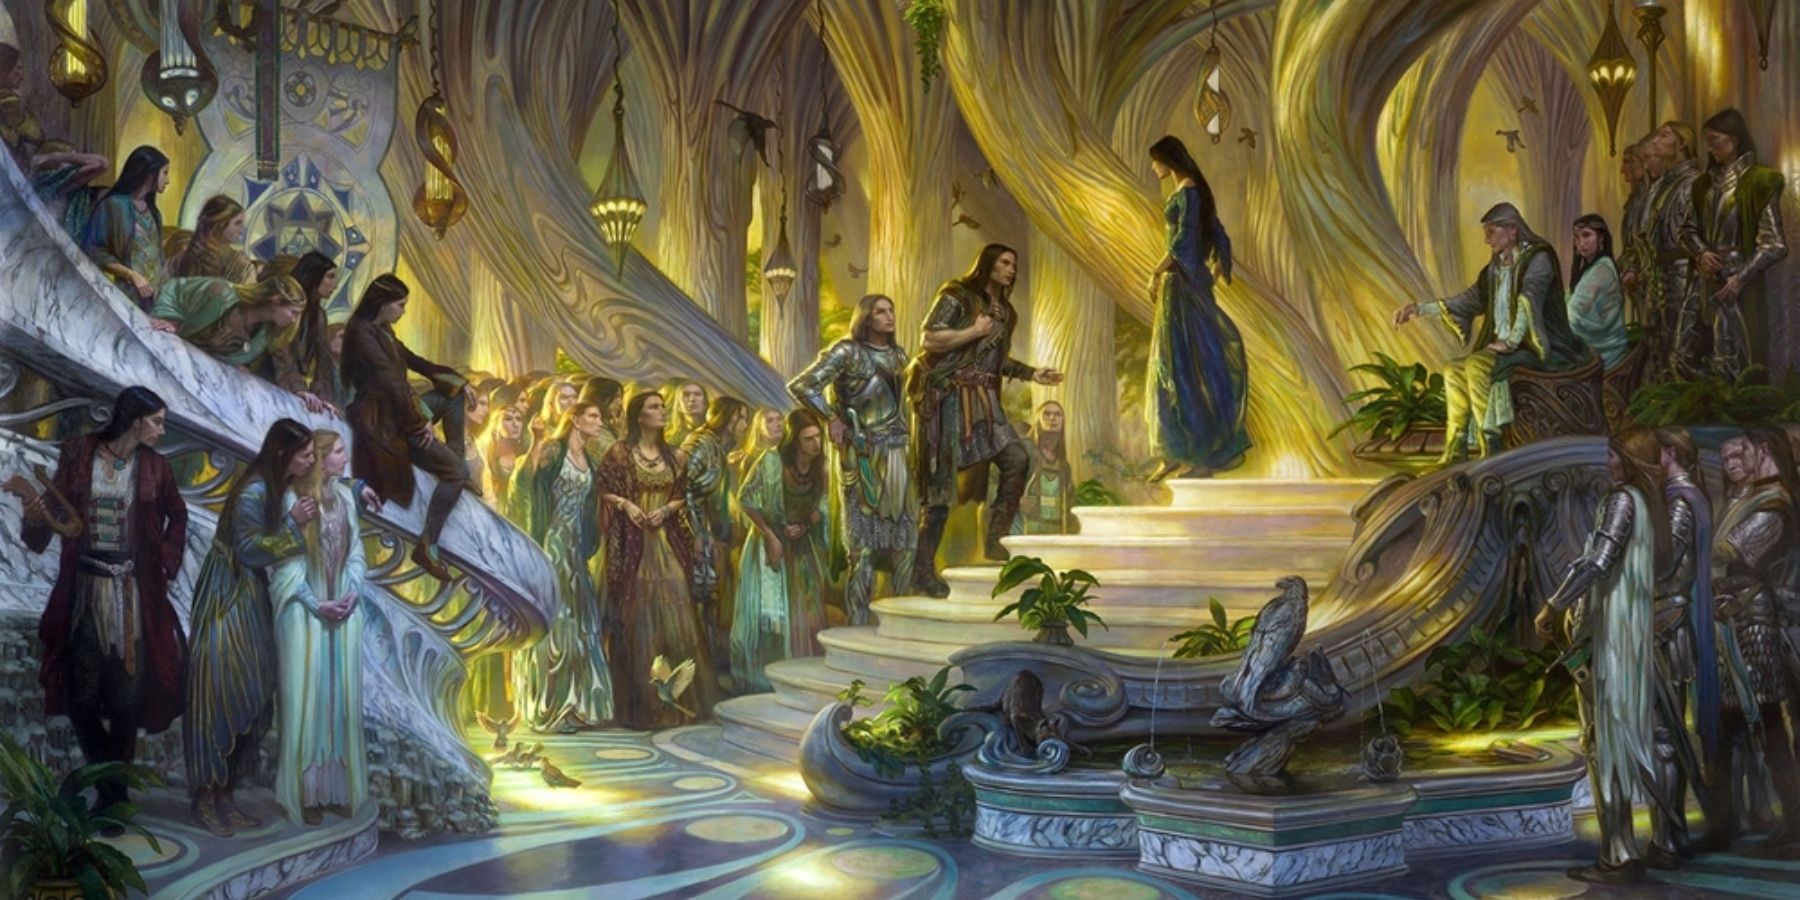 The Silmarillion elves